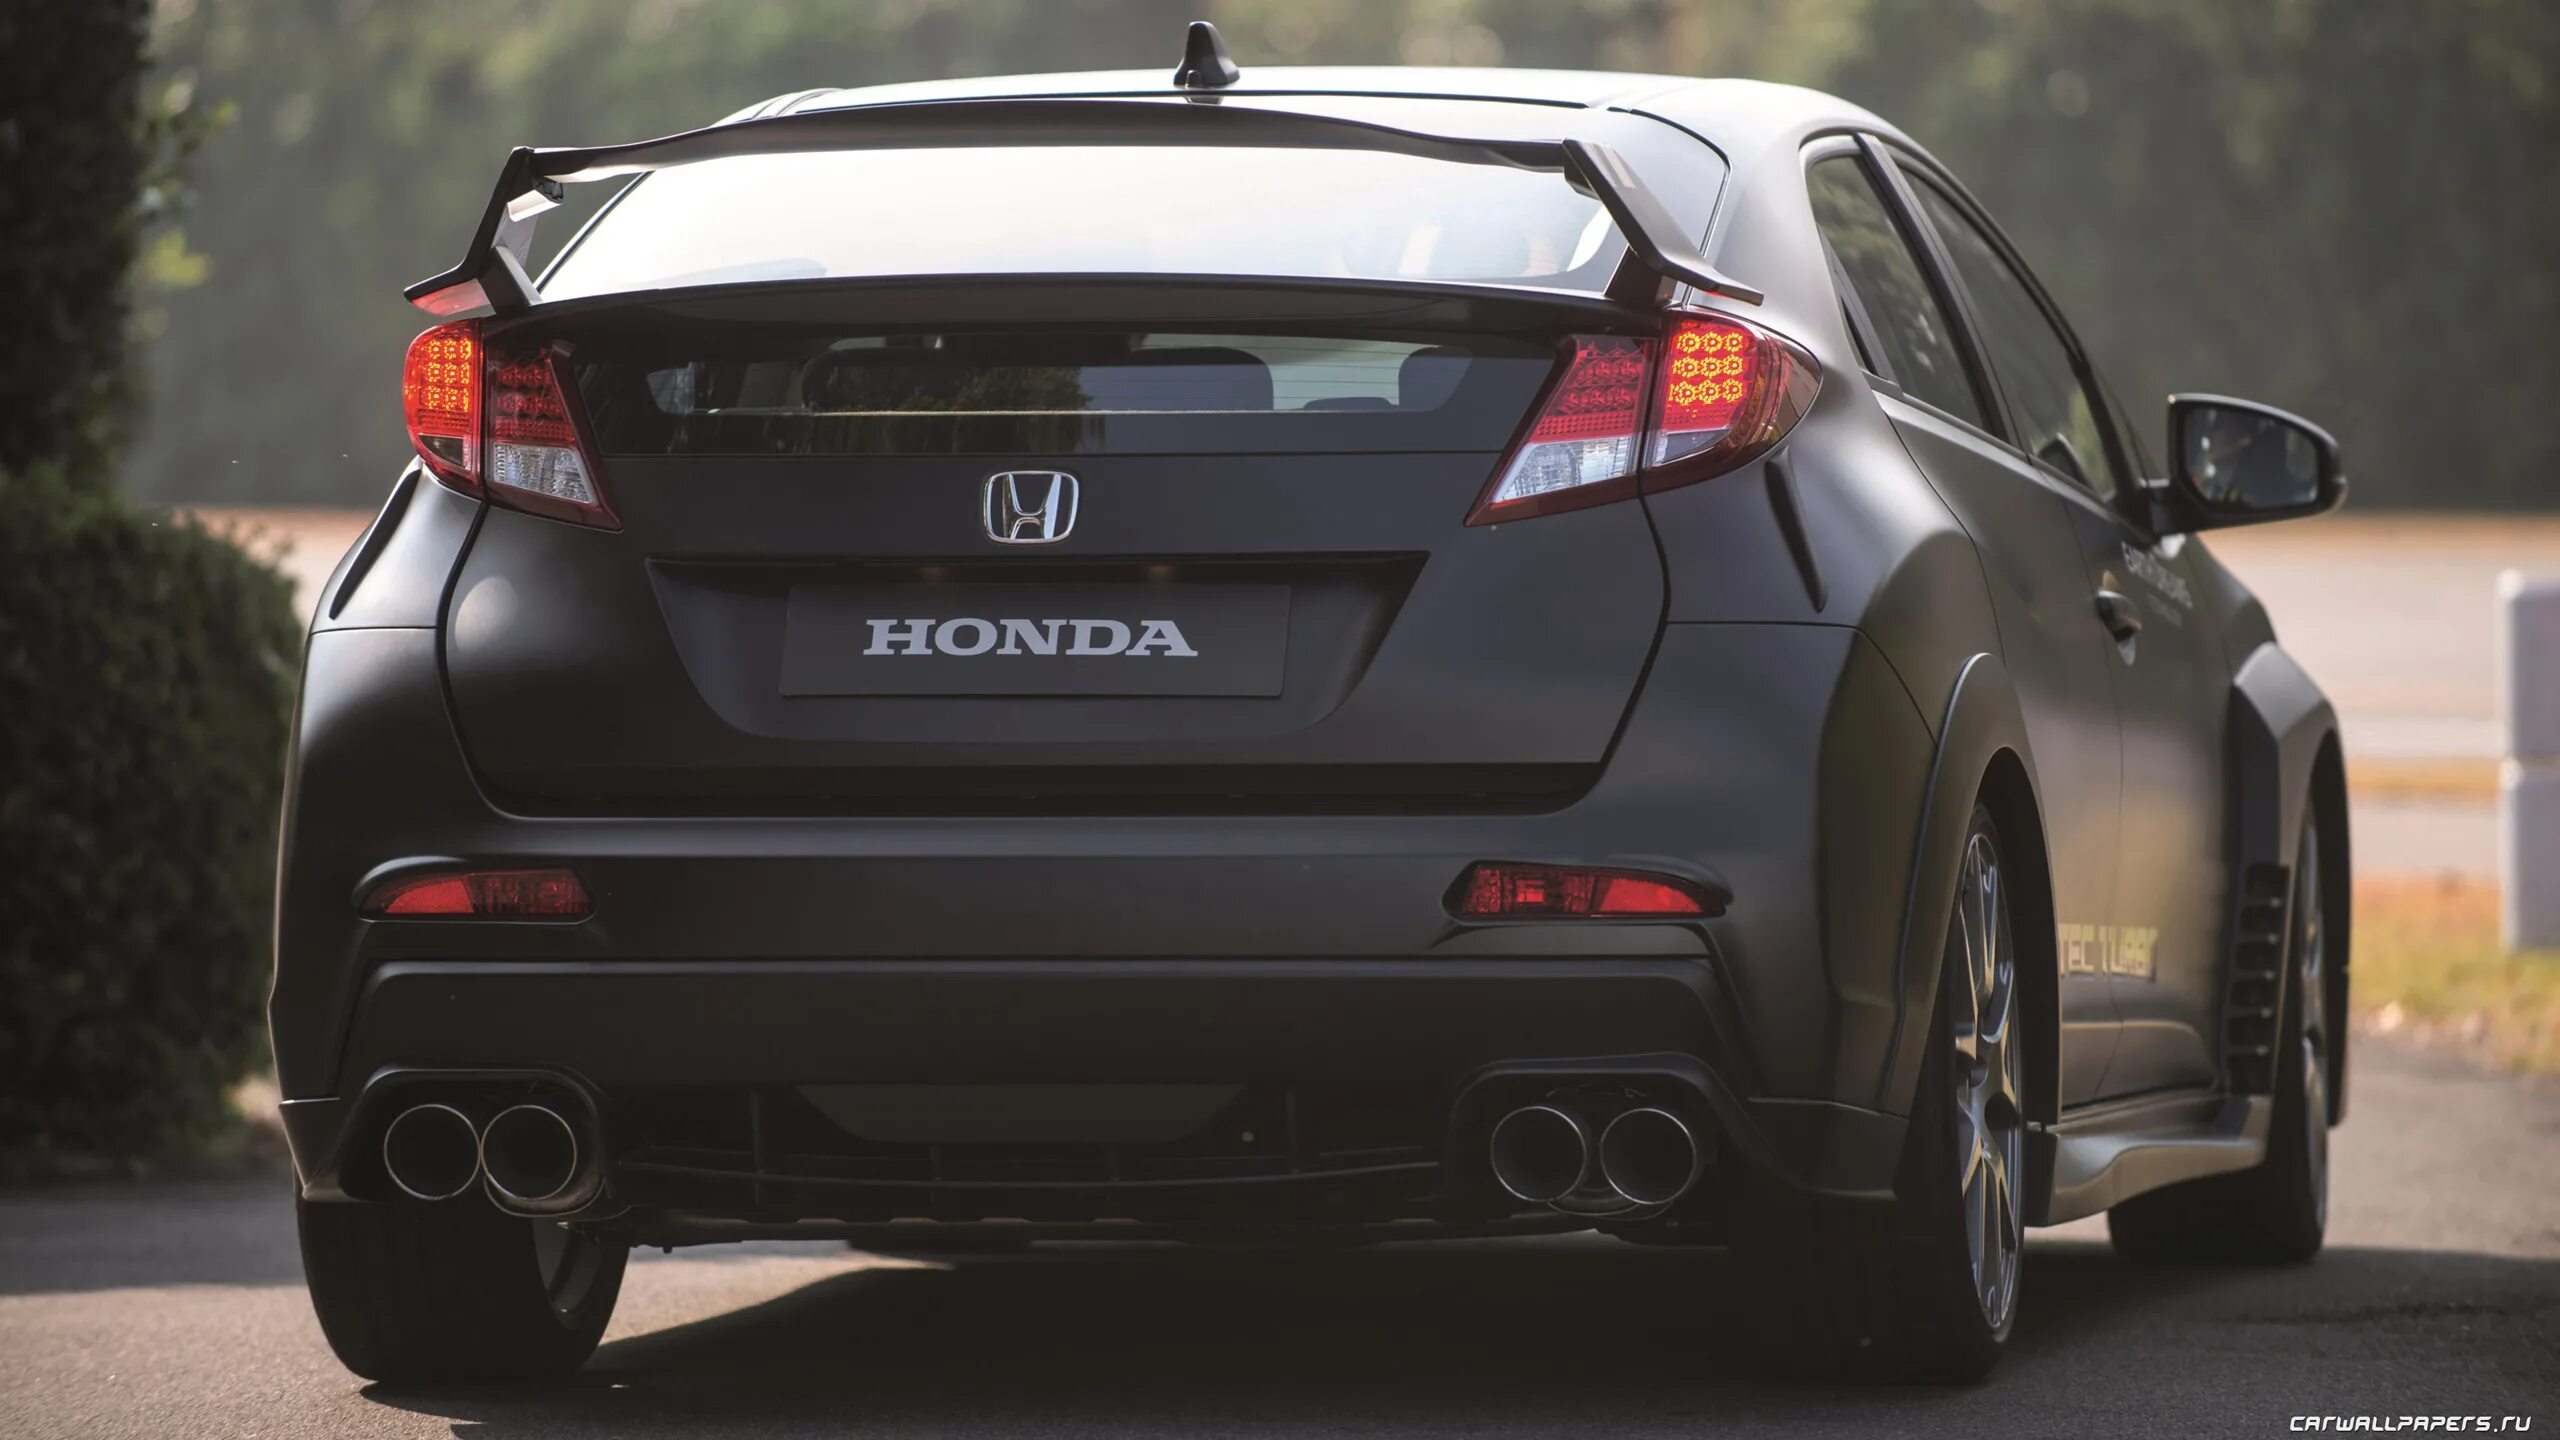 Honda civic drive. Honda Civic 5d Type r. Honda Civic Type r 2015. Honda Civic Type r VTEC. Хонда Сивик тайп р 2015.